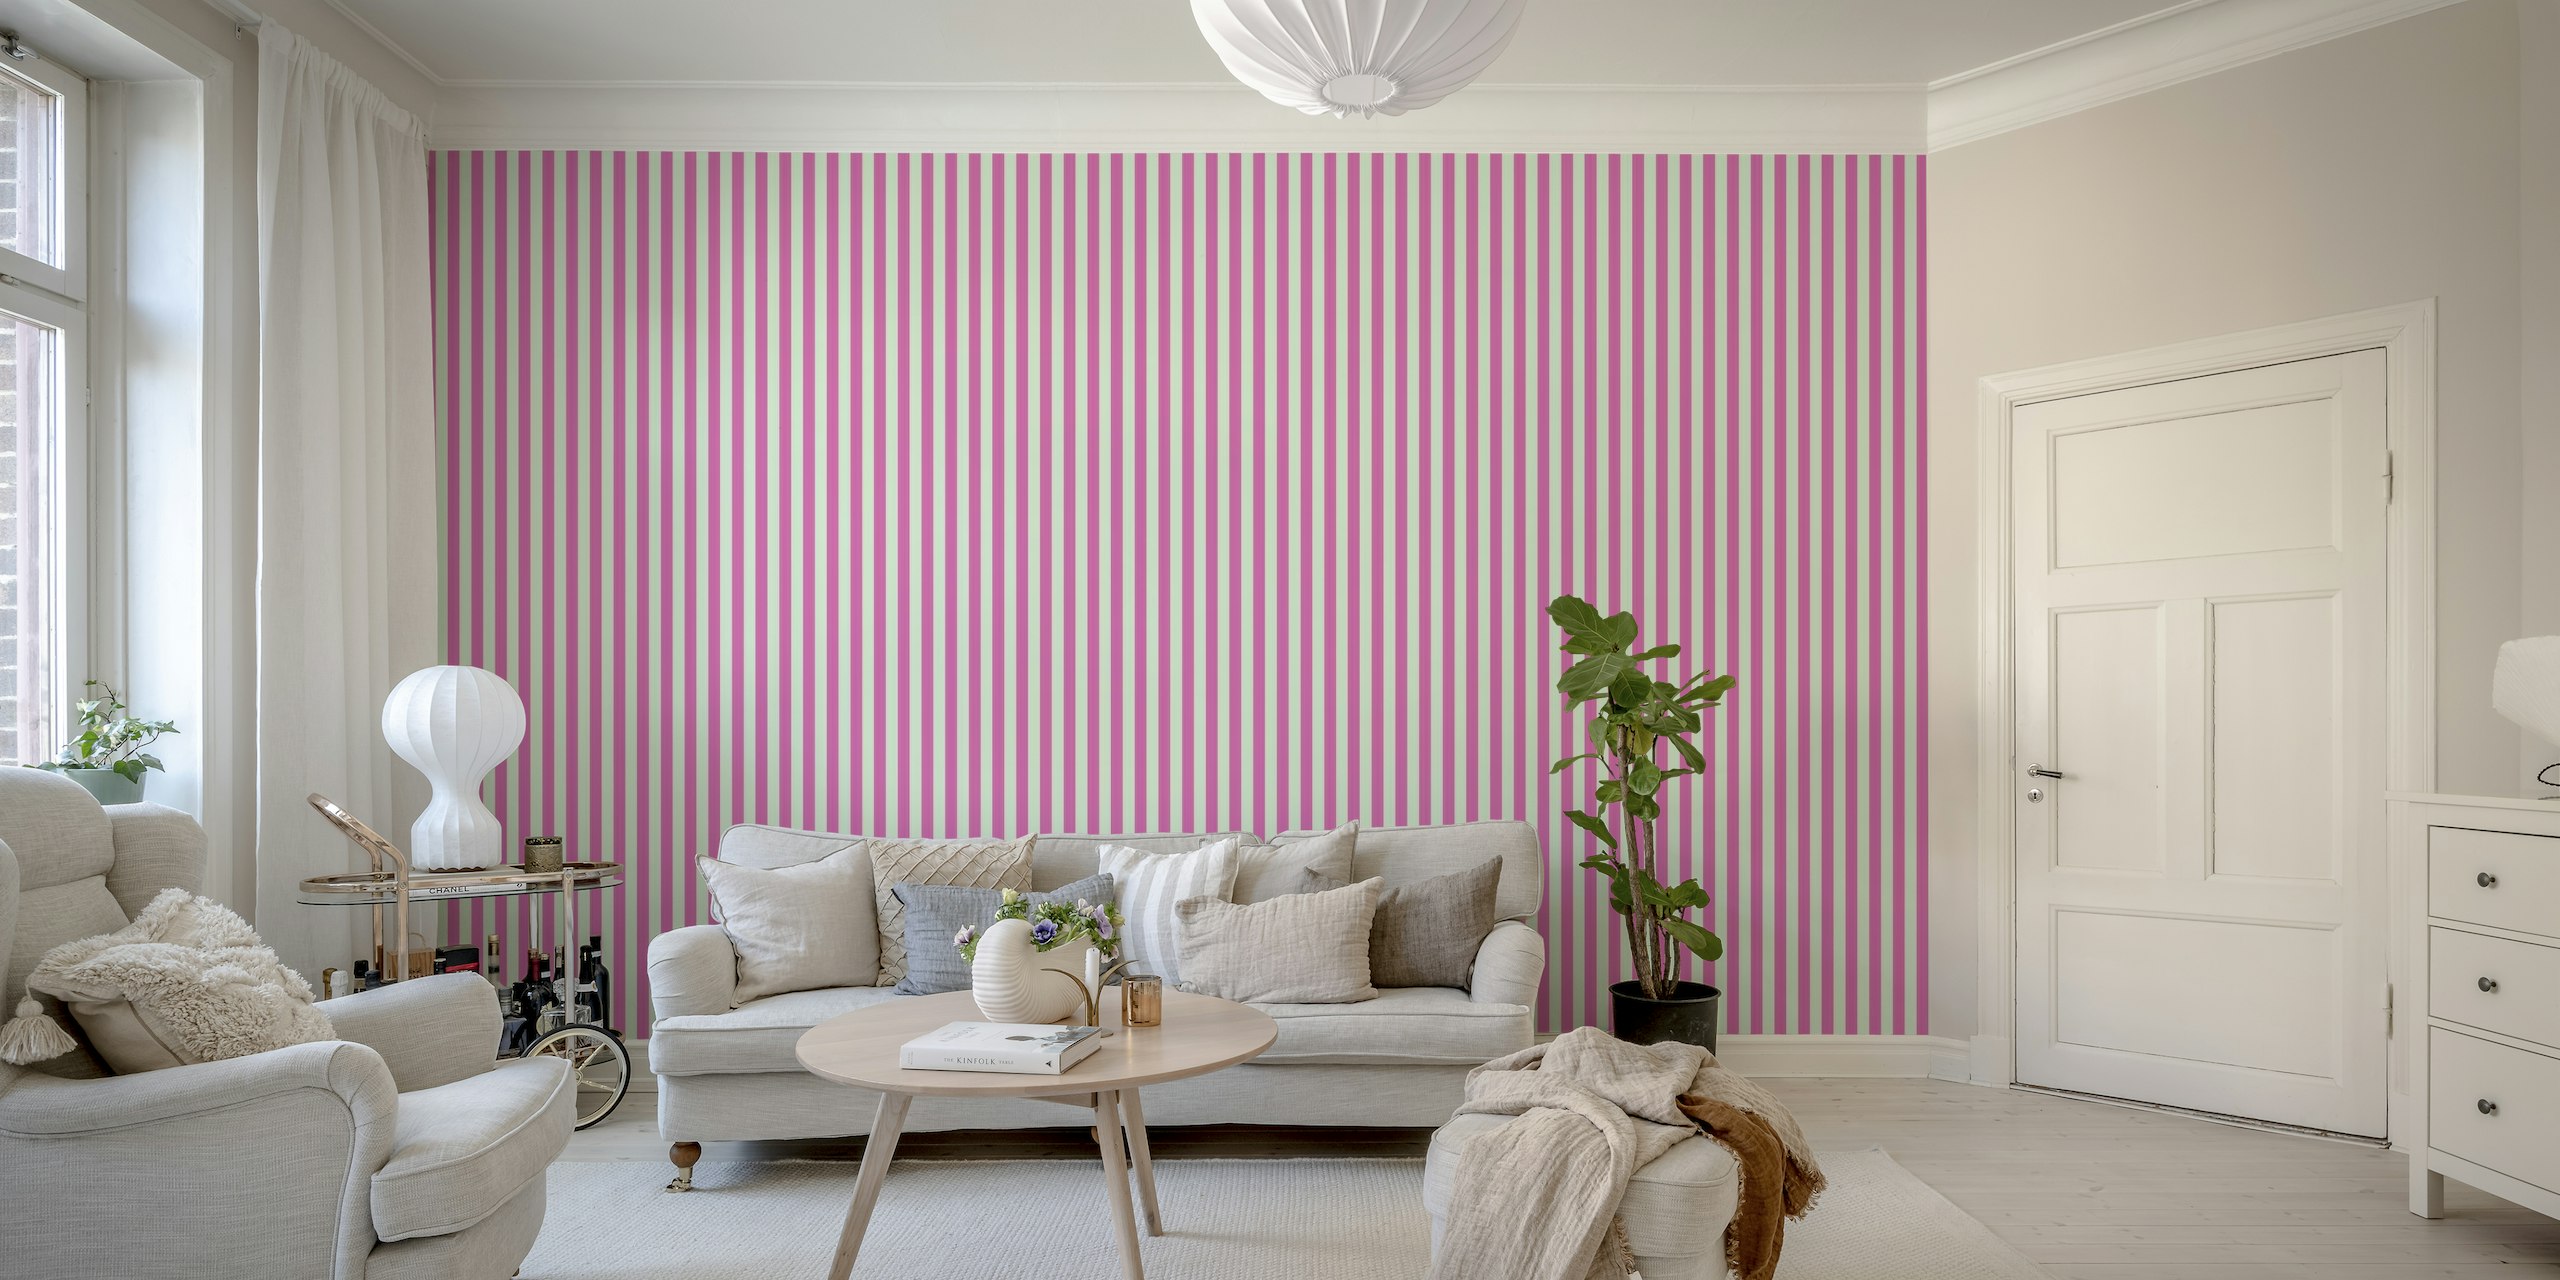 Fototapete mit rosa und mintfarbenen Streifen